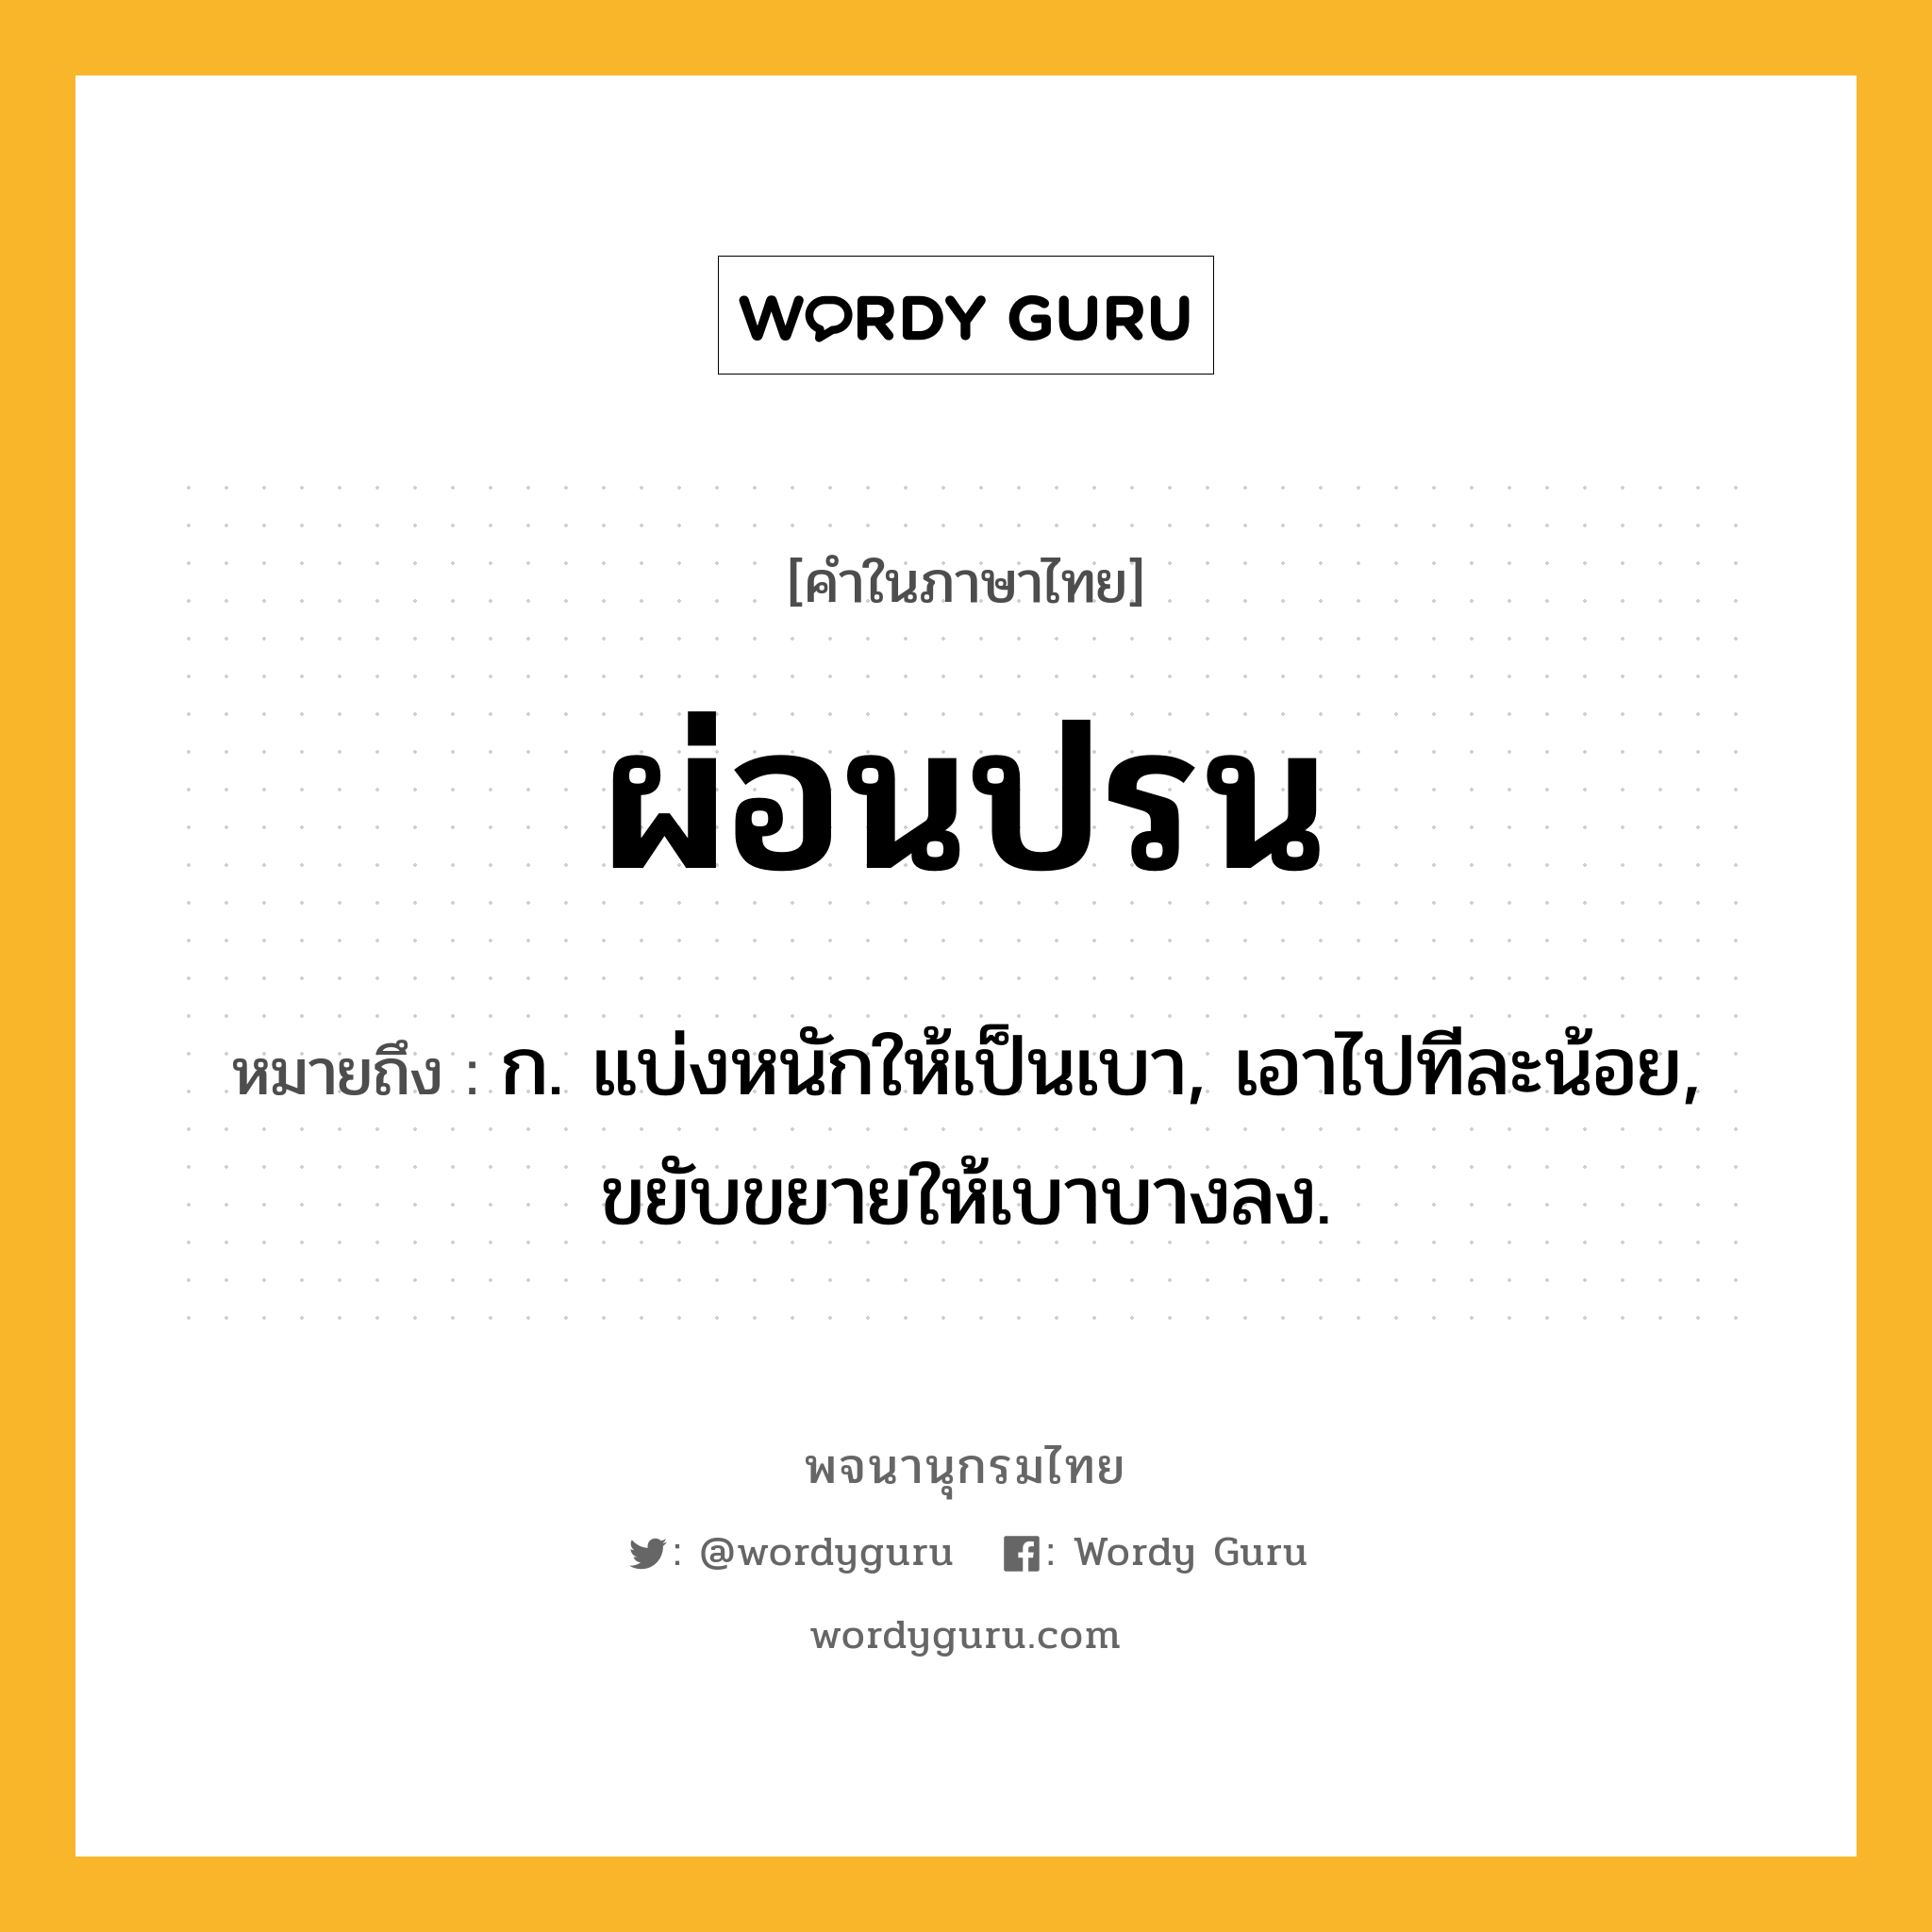 ผ่อนปรน หมายถึงอะไร?, คำในภาษาไทย ผ่อนปรน หมายถึง ก. แบ่งหนักให้เป็นเบา, เอาไปทีละน้อย, ขยับขยายให้เบาบางลง.